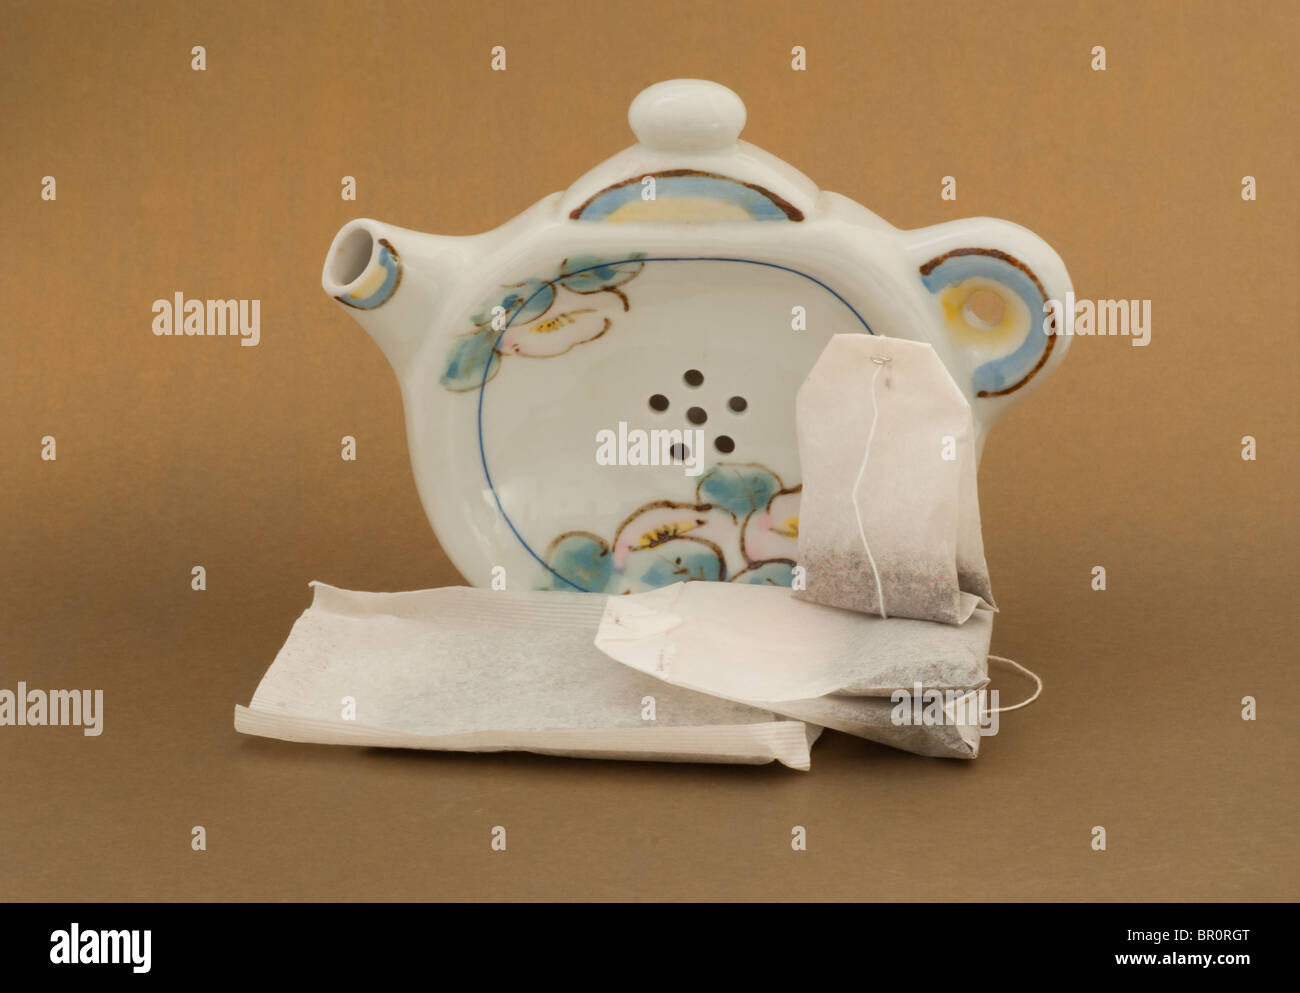 Soporte para teteras de té con orificios de drenaje en el mostrador con una pantalla de teabags de varias formas y tamaños. Foto de stock